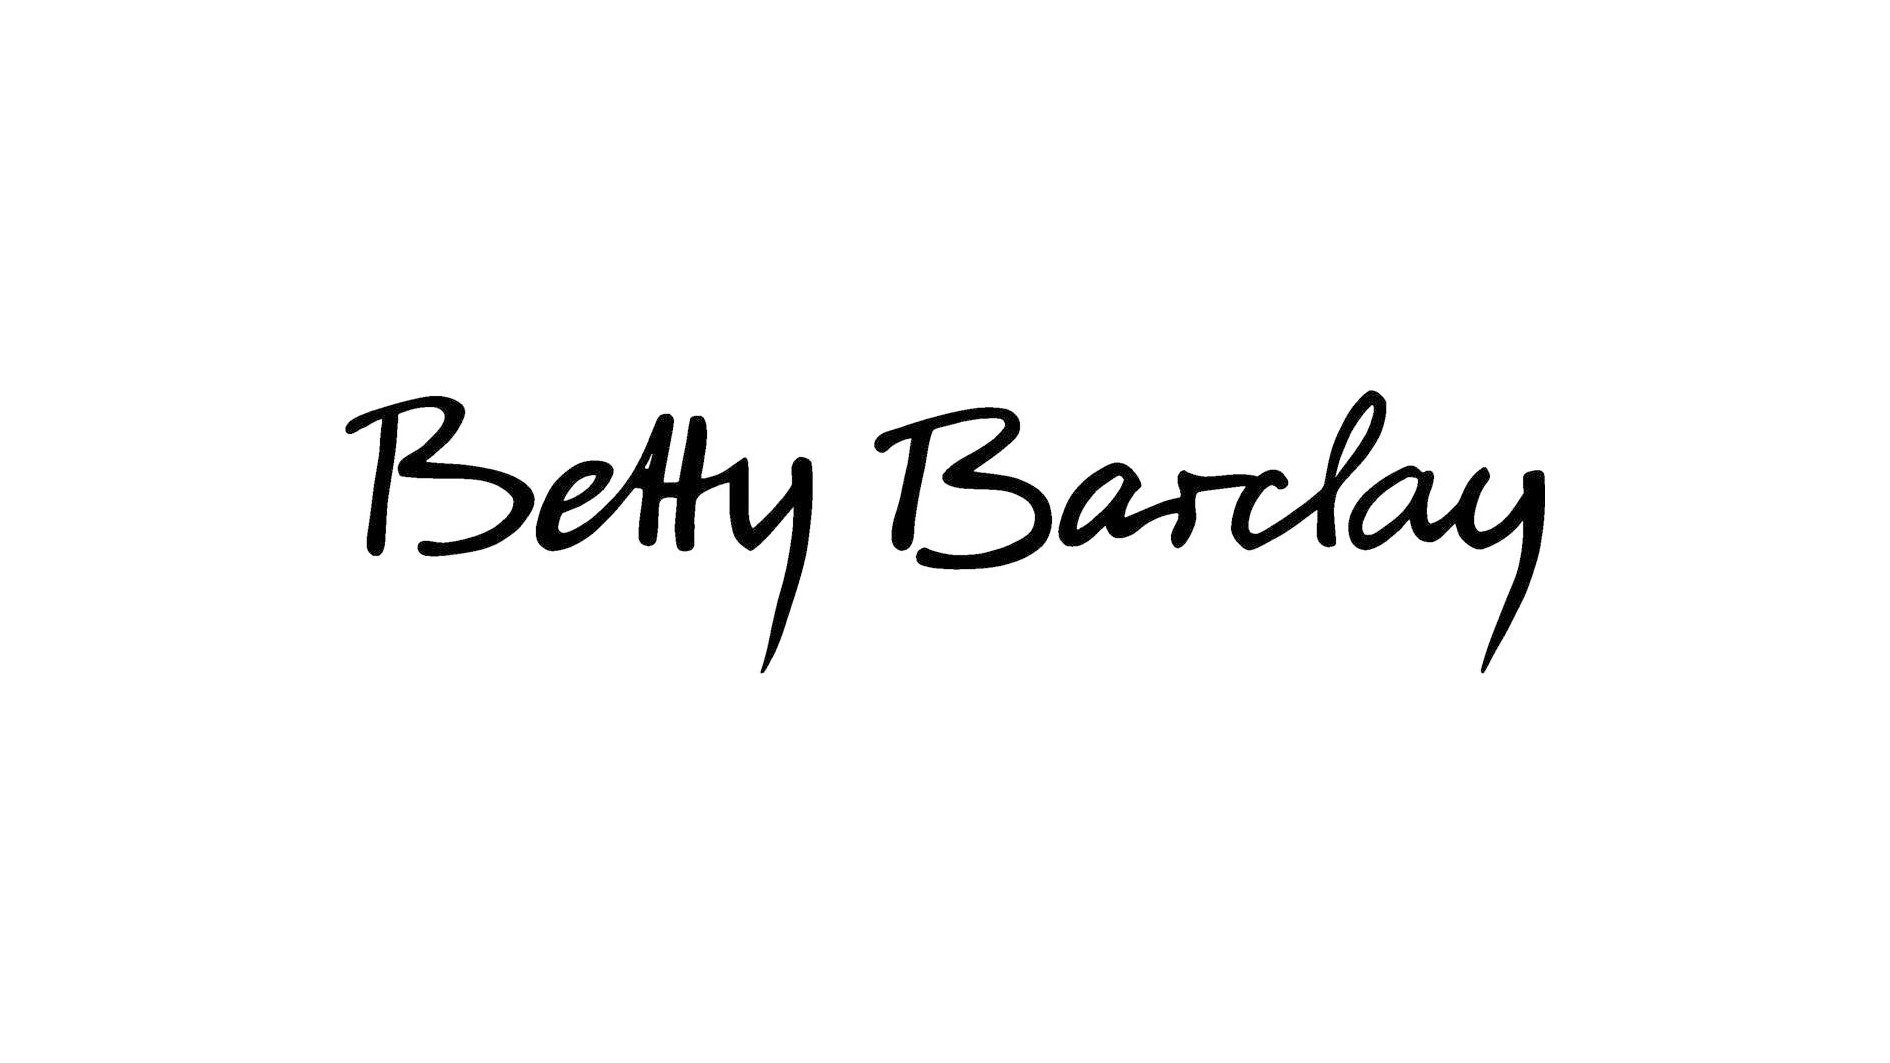 bettybarclay-logo_7e752e36afe84bdea191cf849b64db87.jpg